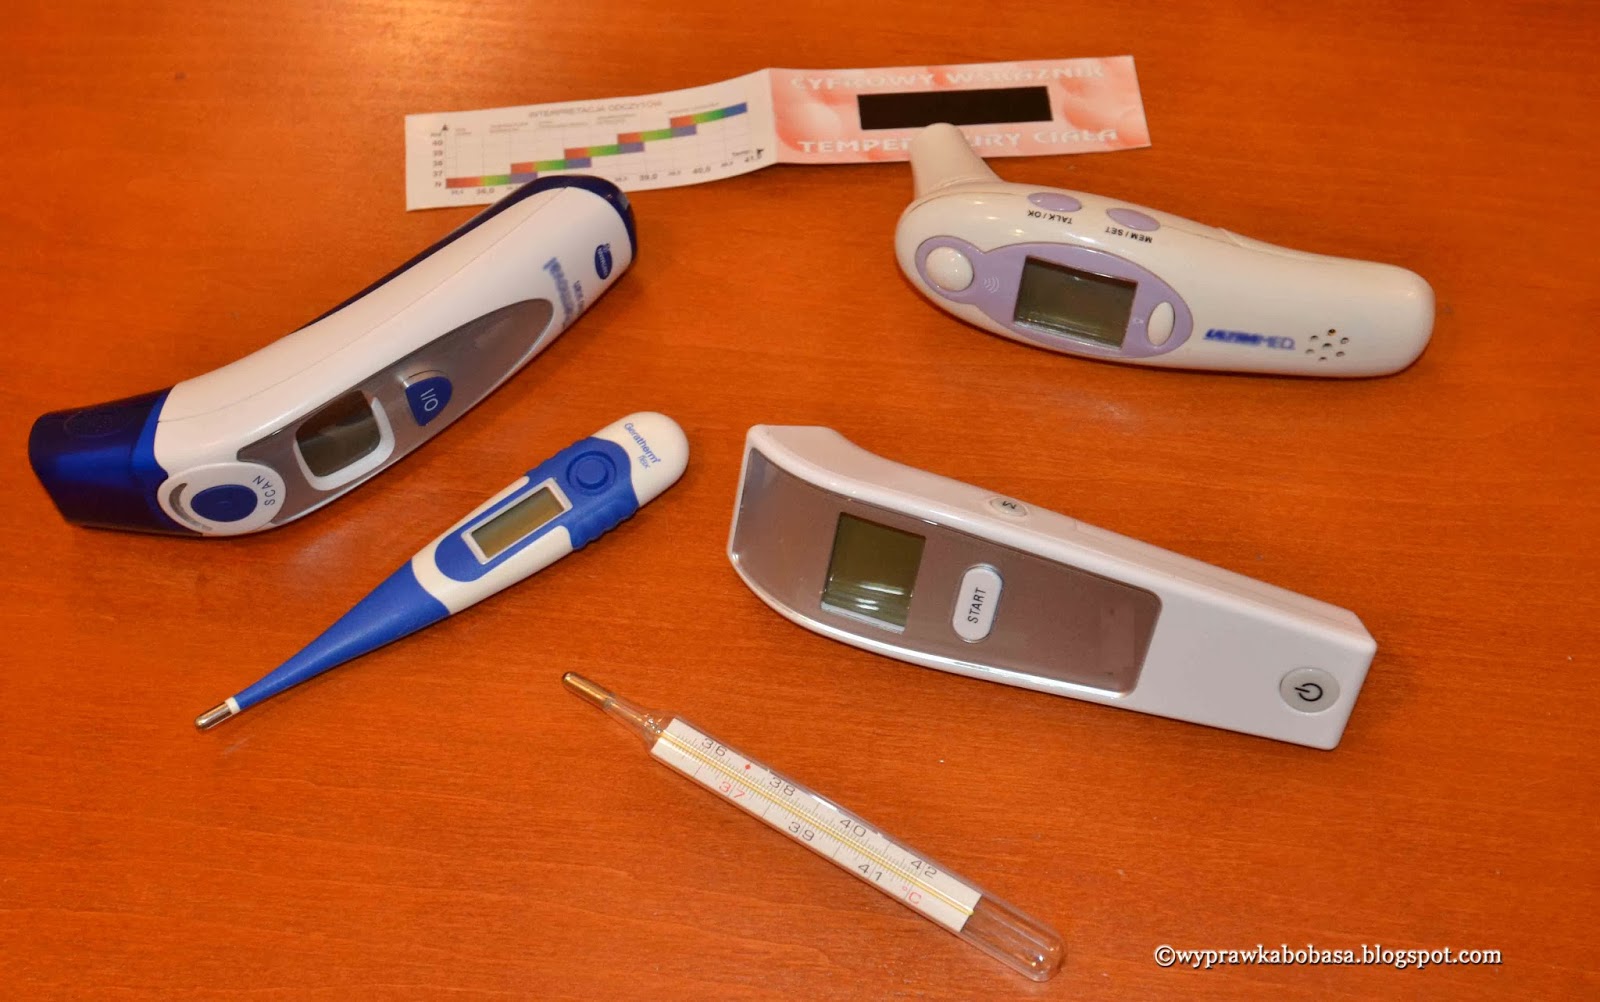 Definitive Fold Sweep Wyprawka Bobasa: Jaki termometr do mierzenia gorączki u dziecka?